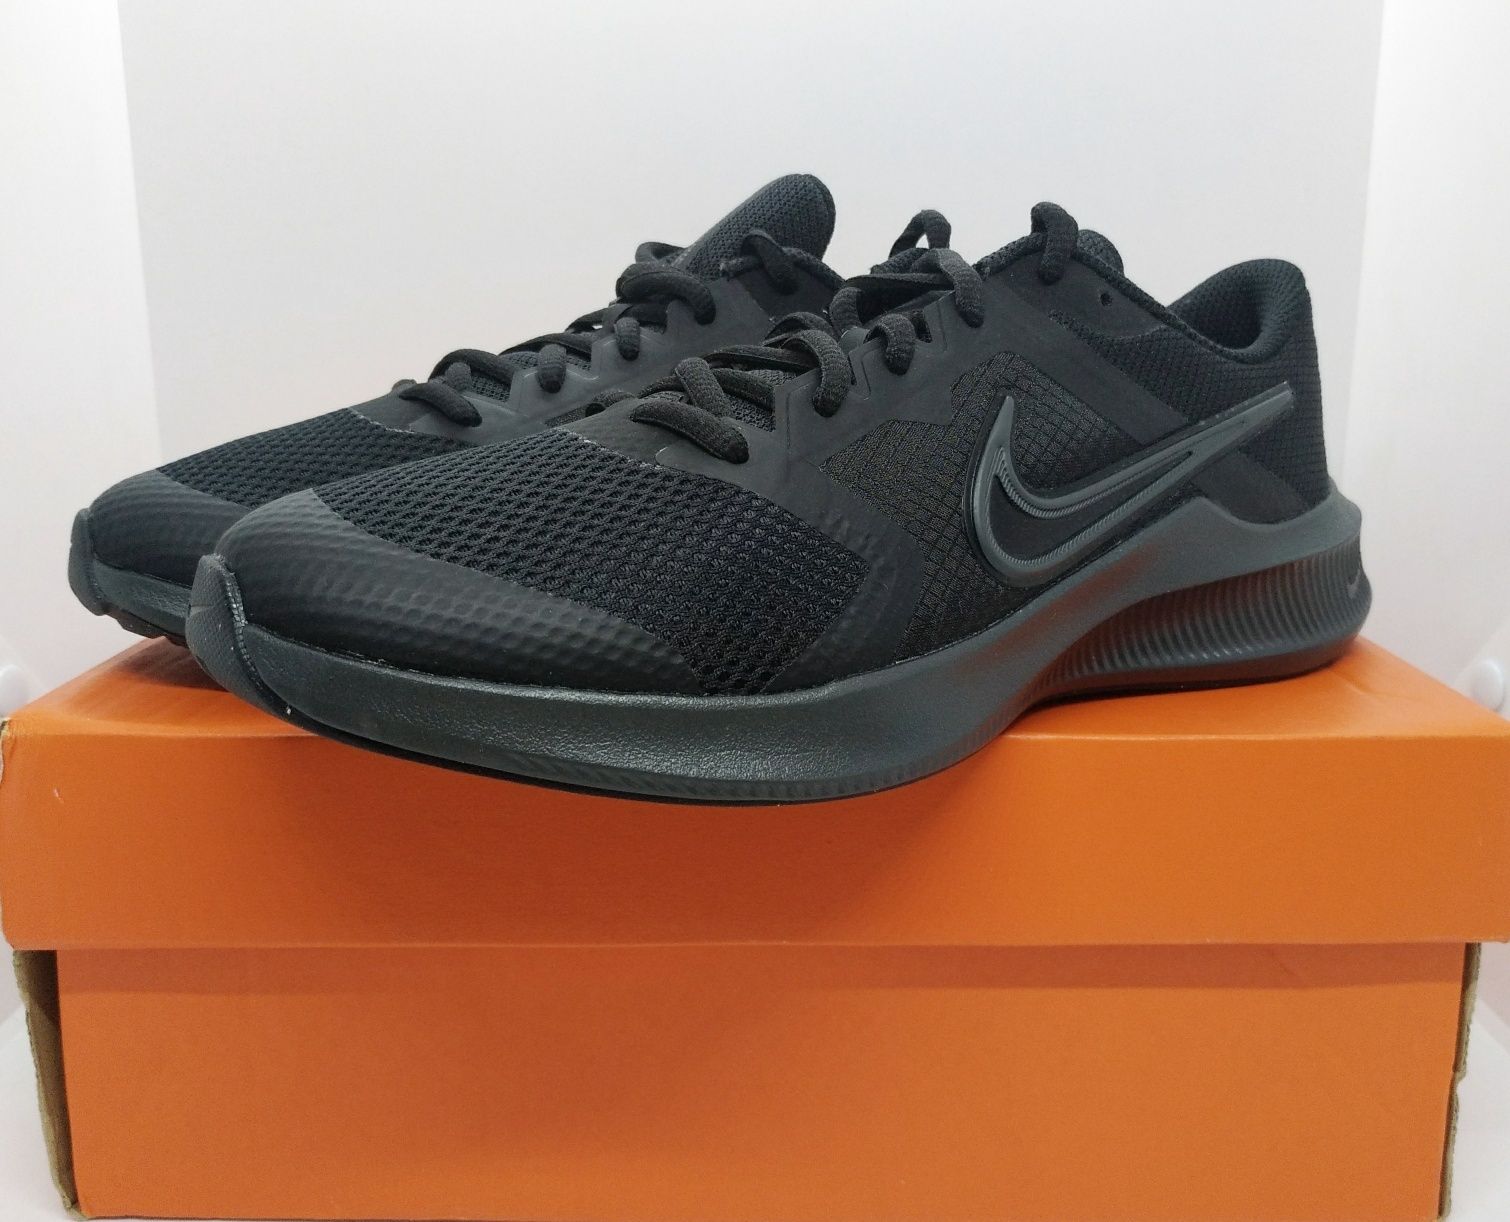 Стильные 25см кроссовки Nike DOWNSHIFTER оригинал